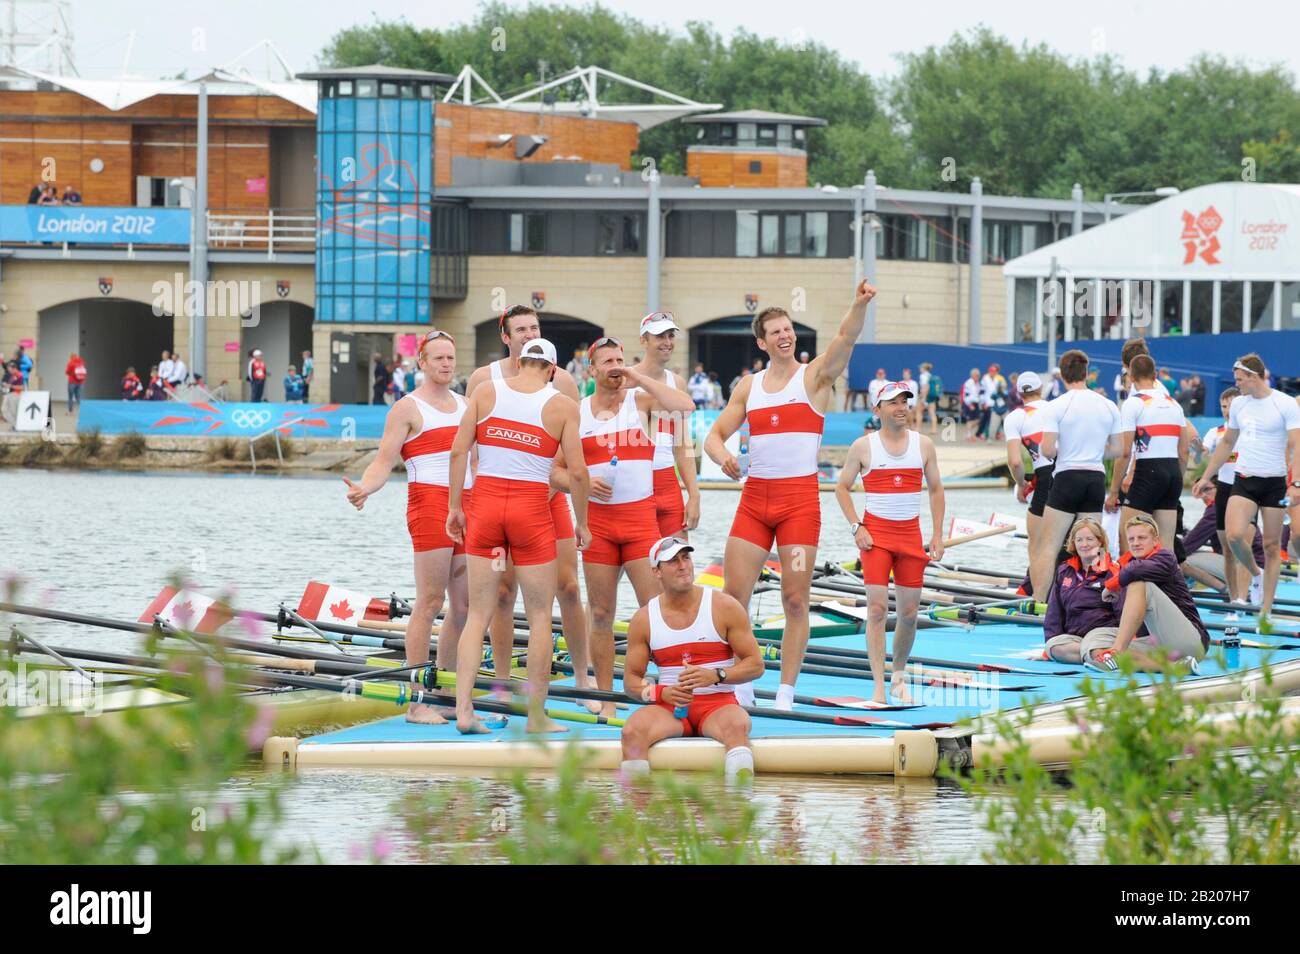 Eton Dorney, Windsor, Großbritannien, 2012 London Olympic Regatta, Dorney Lake. Eton Rowing Center, Berkshire[ Rowing]. Beschreibung; Herren Achter Finale. CANM8+. Gabriel BERGEN (b) , Douglas CSIMA (2) , Rob GIBSON (3) , Conlin MCCABE (4) , Malcolm HOWARD (5) , Andrew BYRNES (6) , Jeremiah BROWN (7) , Will CROTHER (s) , Brian PRICE (c) Dorney Lake. 12:52:52 Mittwoch 01/08/2012. [Pflichtgutschrift: Peter Spurrier/Intersport Images] Dorney Lake, Eton, Großbritannien. Austragungsort, Rowing, 2012 London Olympic Regatta. Stockfoto